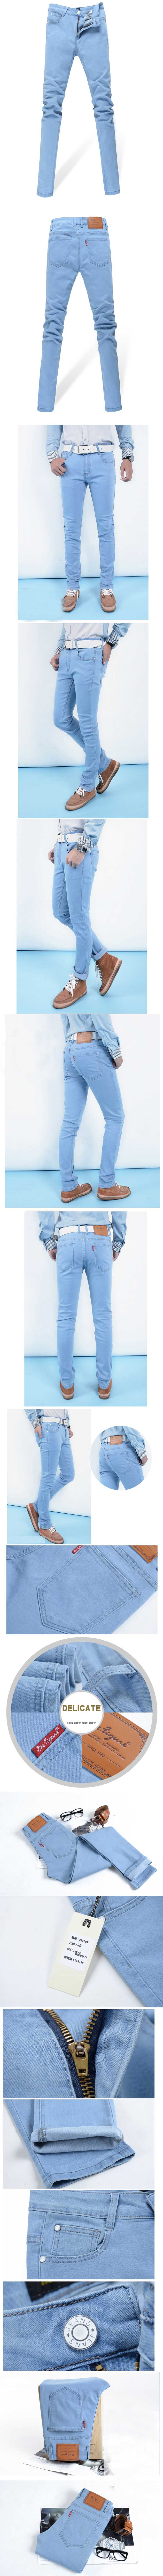 jual celana jeans pria model panjang dari bahan jeans stretch dan didesain slimfit sangat cocok untuk anda yang ingin tampil keren. temukan koleksi jeans lain nya